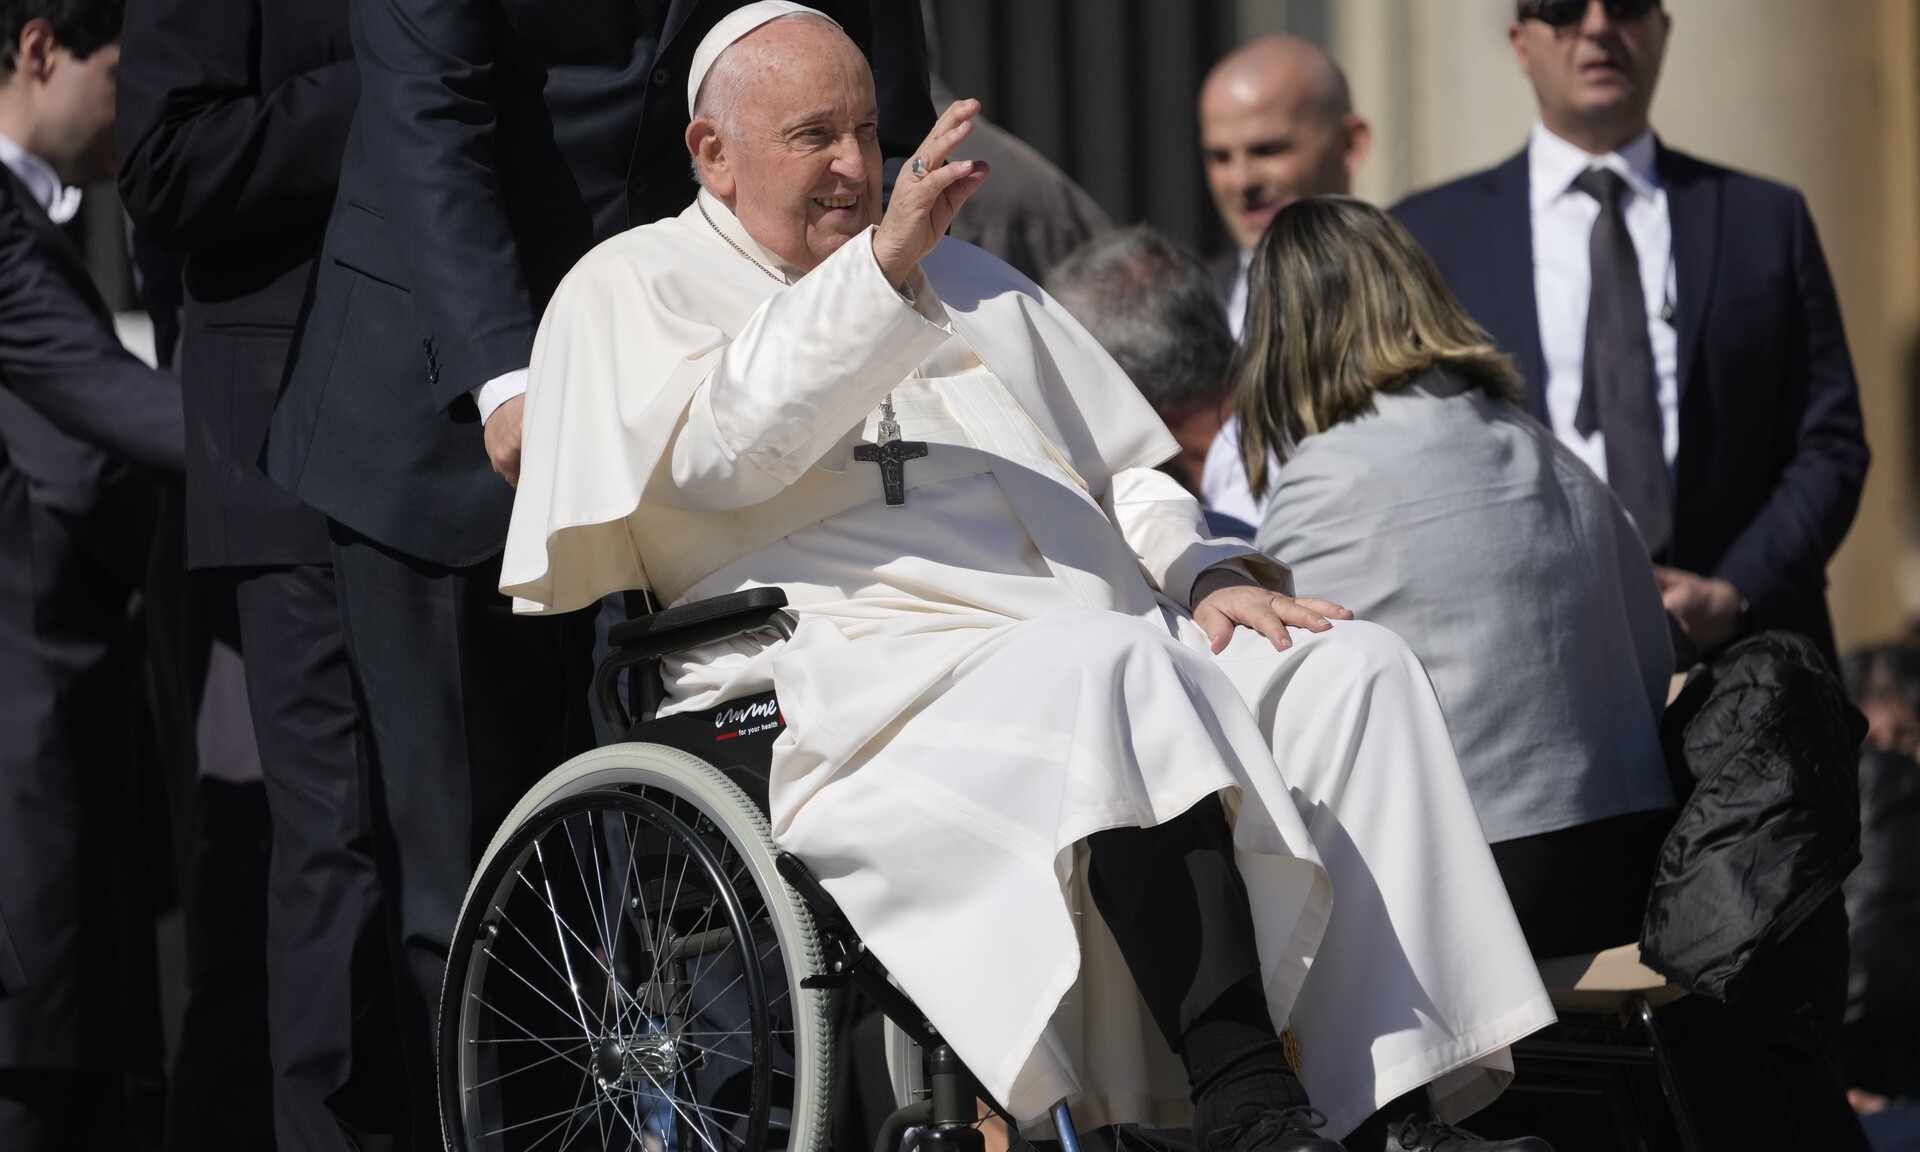 Πάπας Φραγκίσκος: «Όταν πεθάνω θέλω ένα φέρετρο αξιοπρεπές, αλλά όπως όλοι οι άλλοι χριστιανοί»